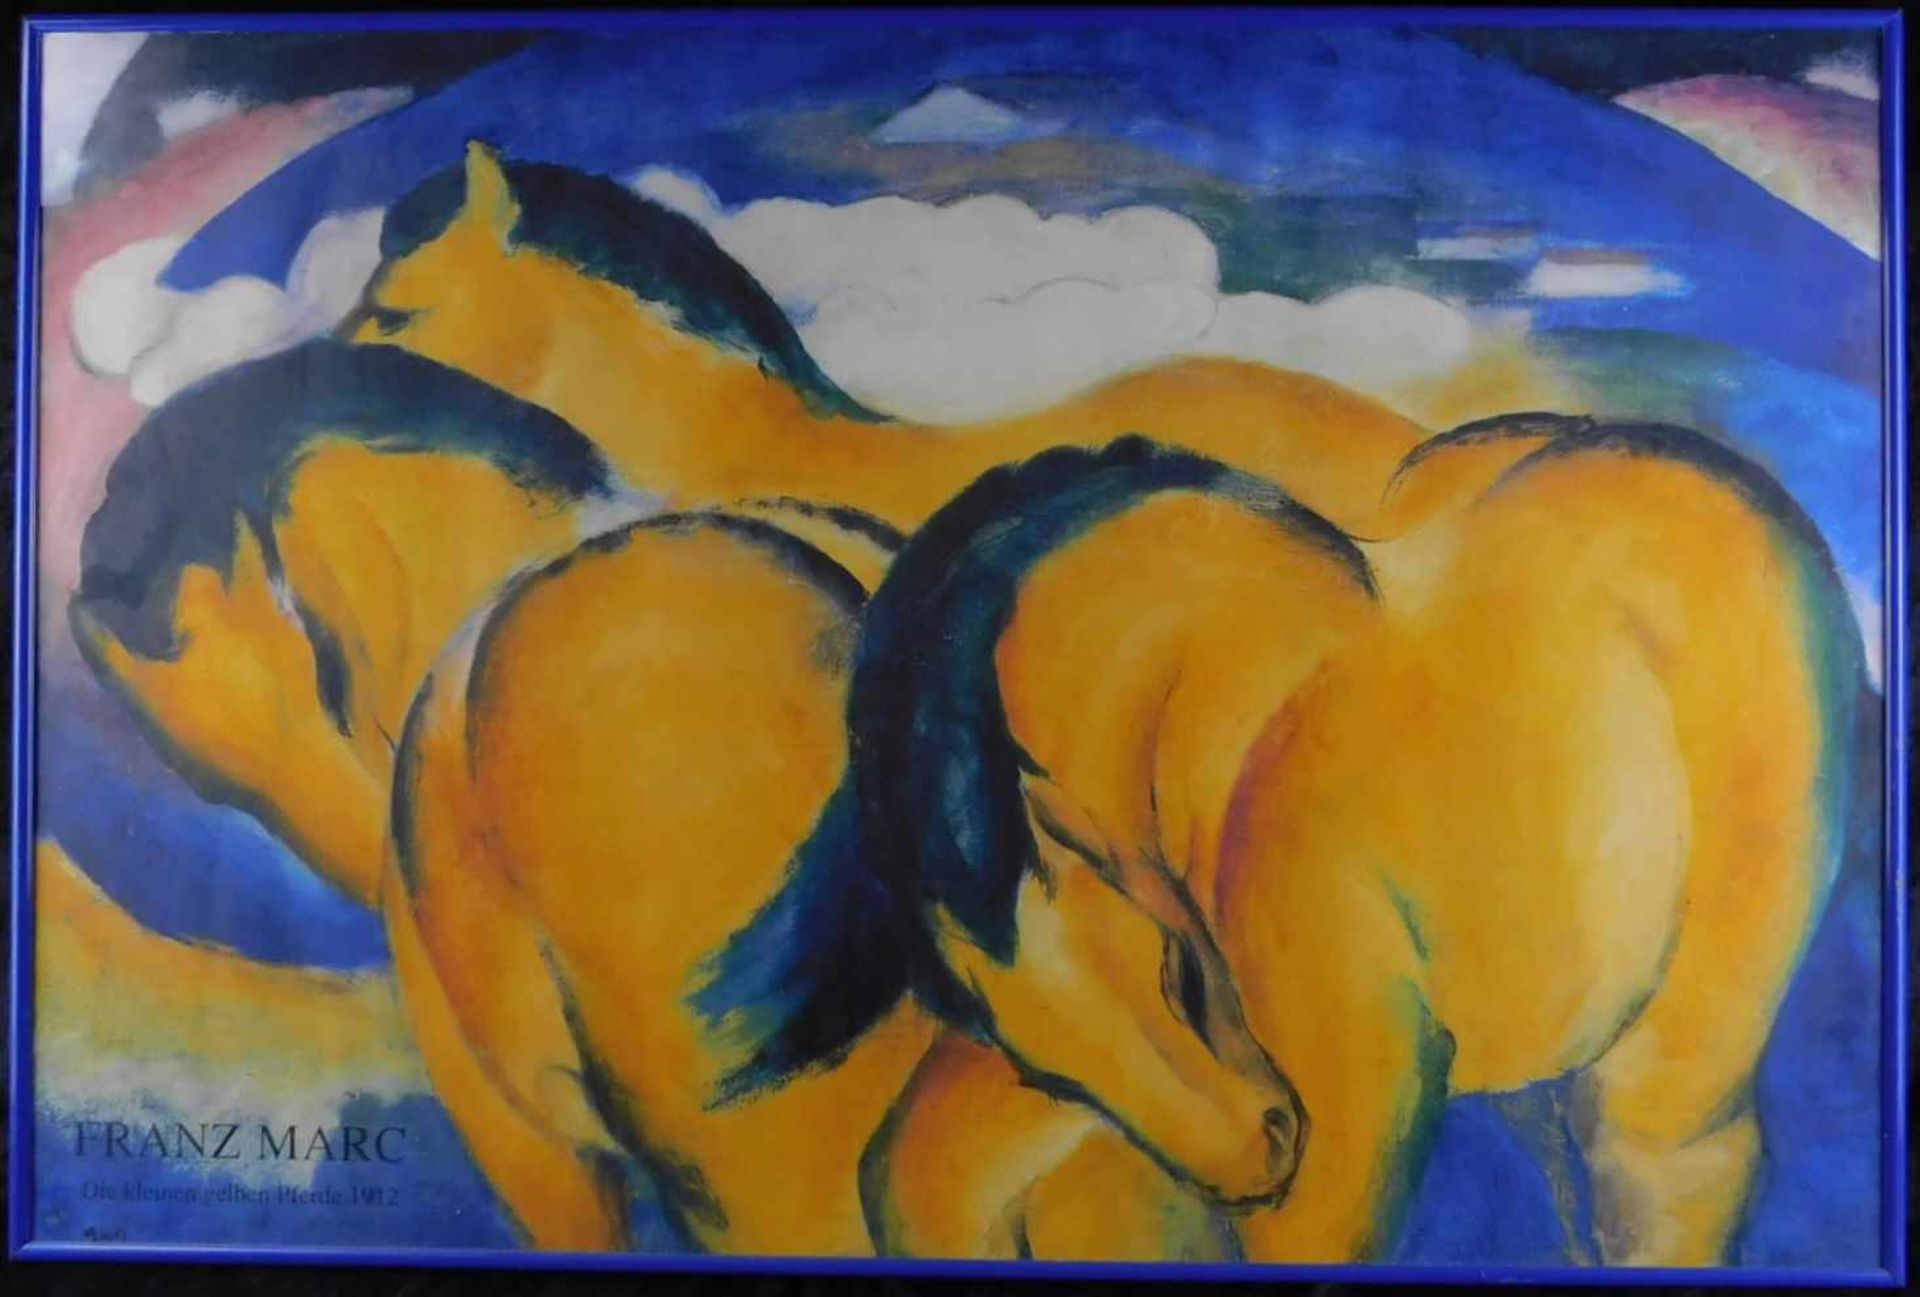 Franz Marc, Ausstellungsplakat, Die kleinen gelben Pferde 1912, Offset-Druck, Höhe 62 cm, Breite